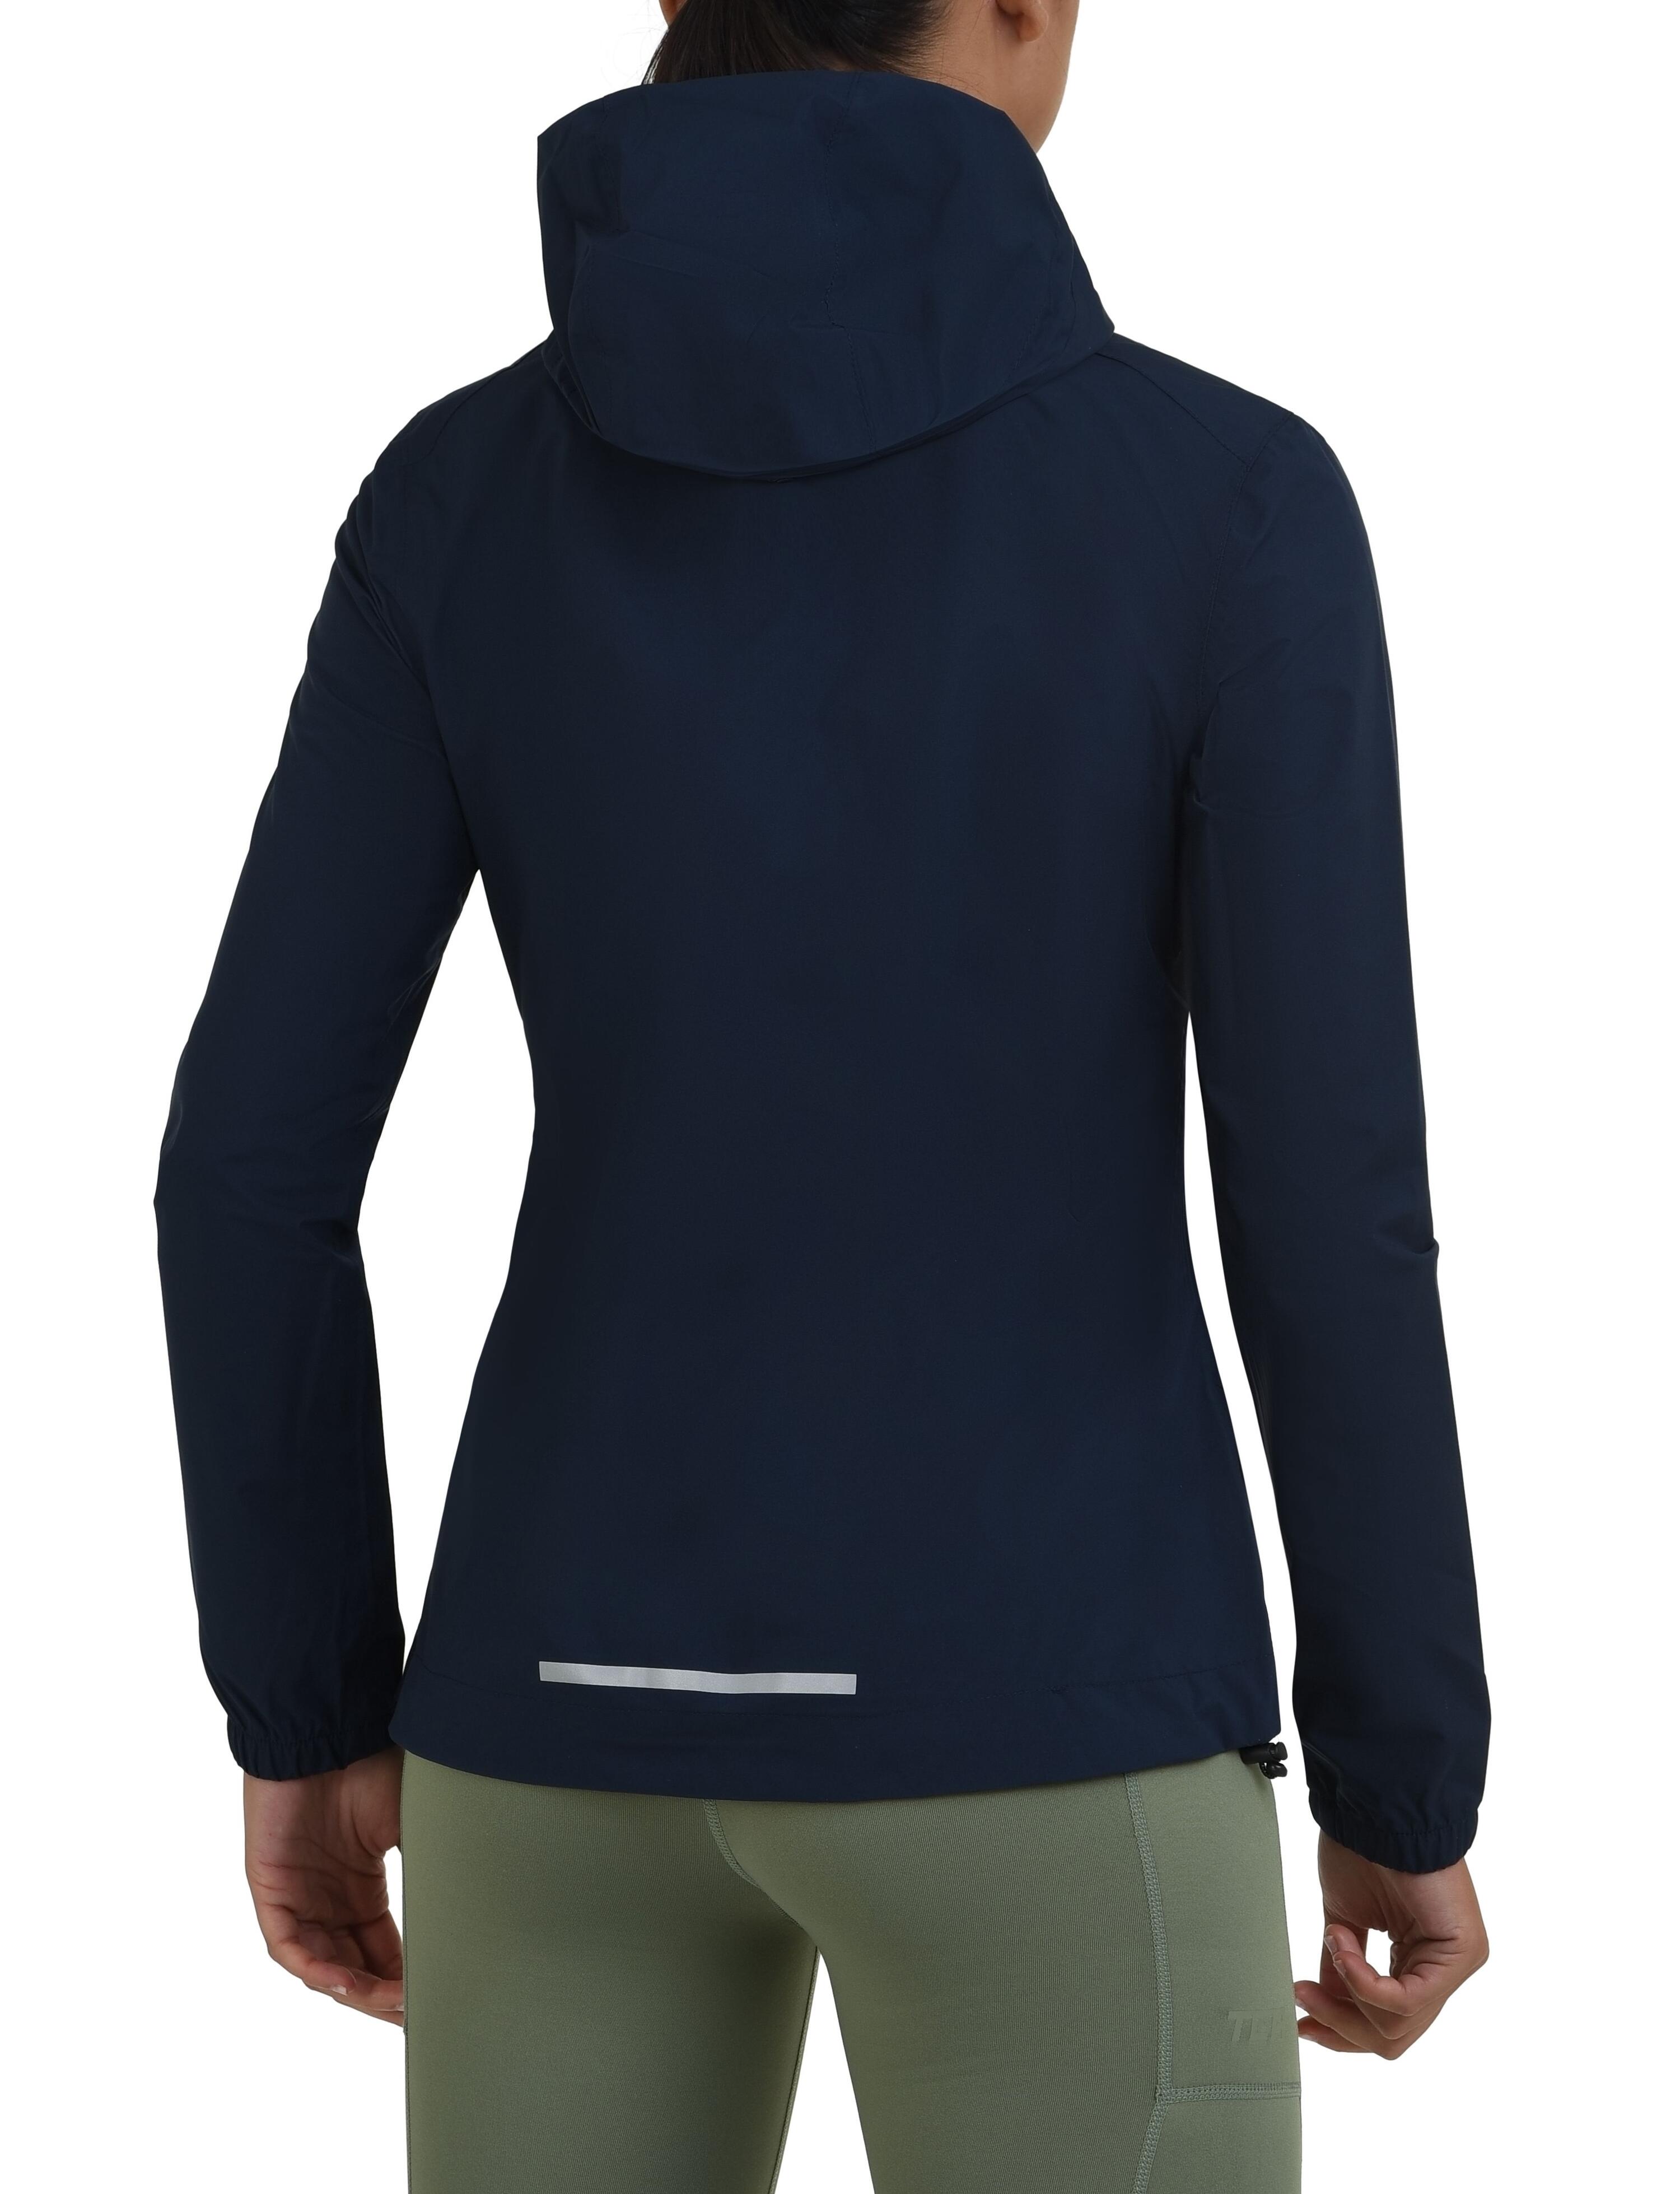 Women's AirLite Rain Jacket with Zip Pockets - Navy Blazer 3/4